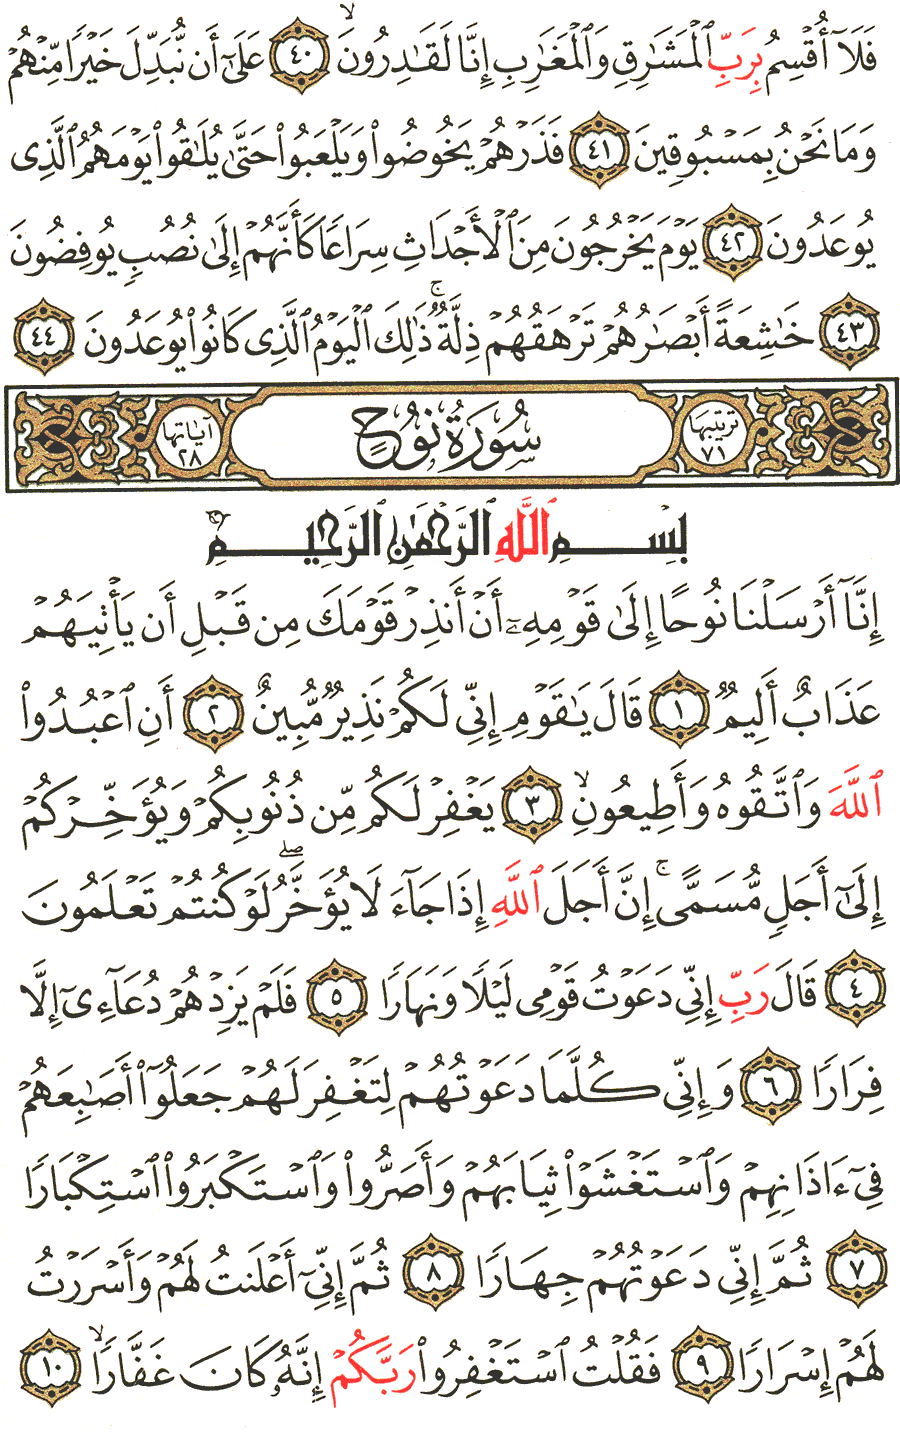 الصفحة 570 من القرآن الكريم